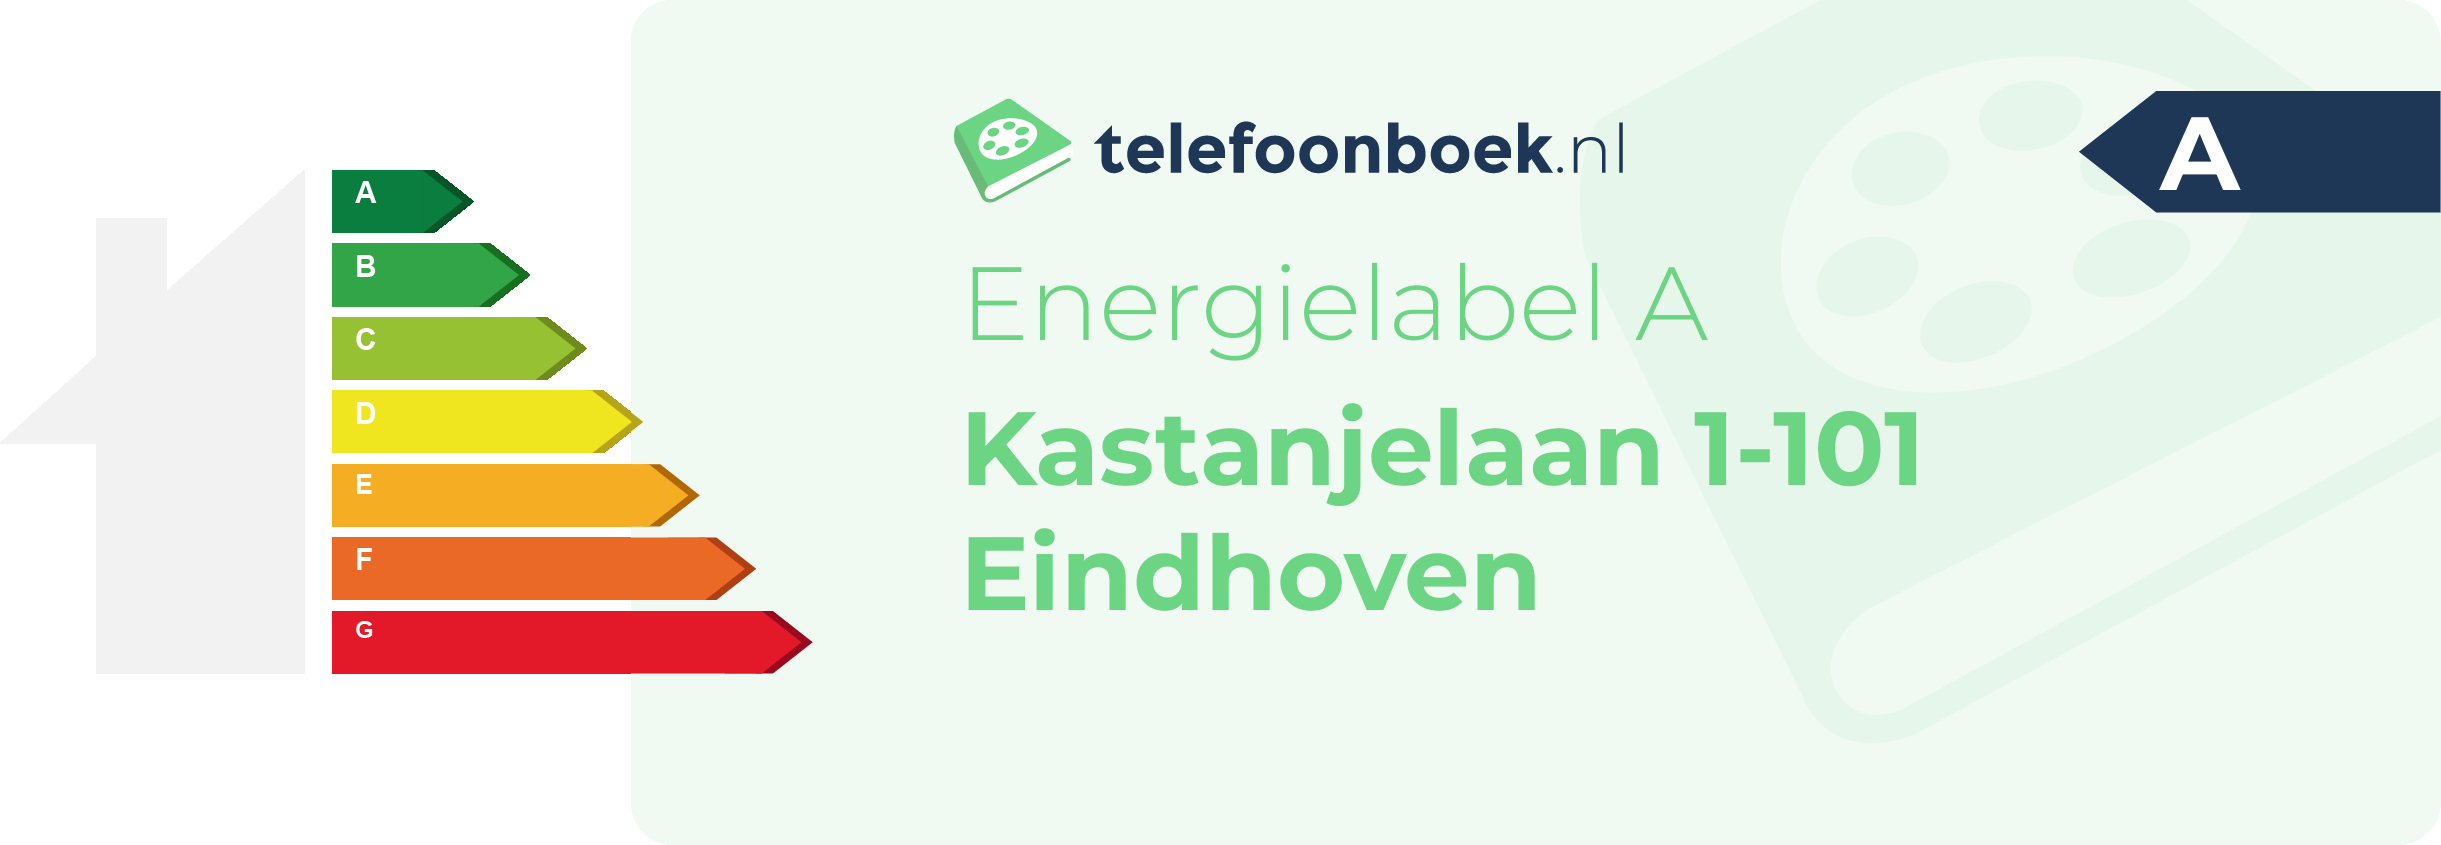 Energielabel Kastanjelaan 1-101 Eindhoven